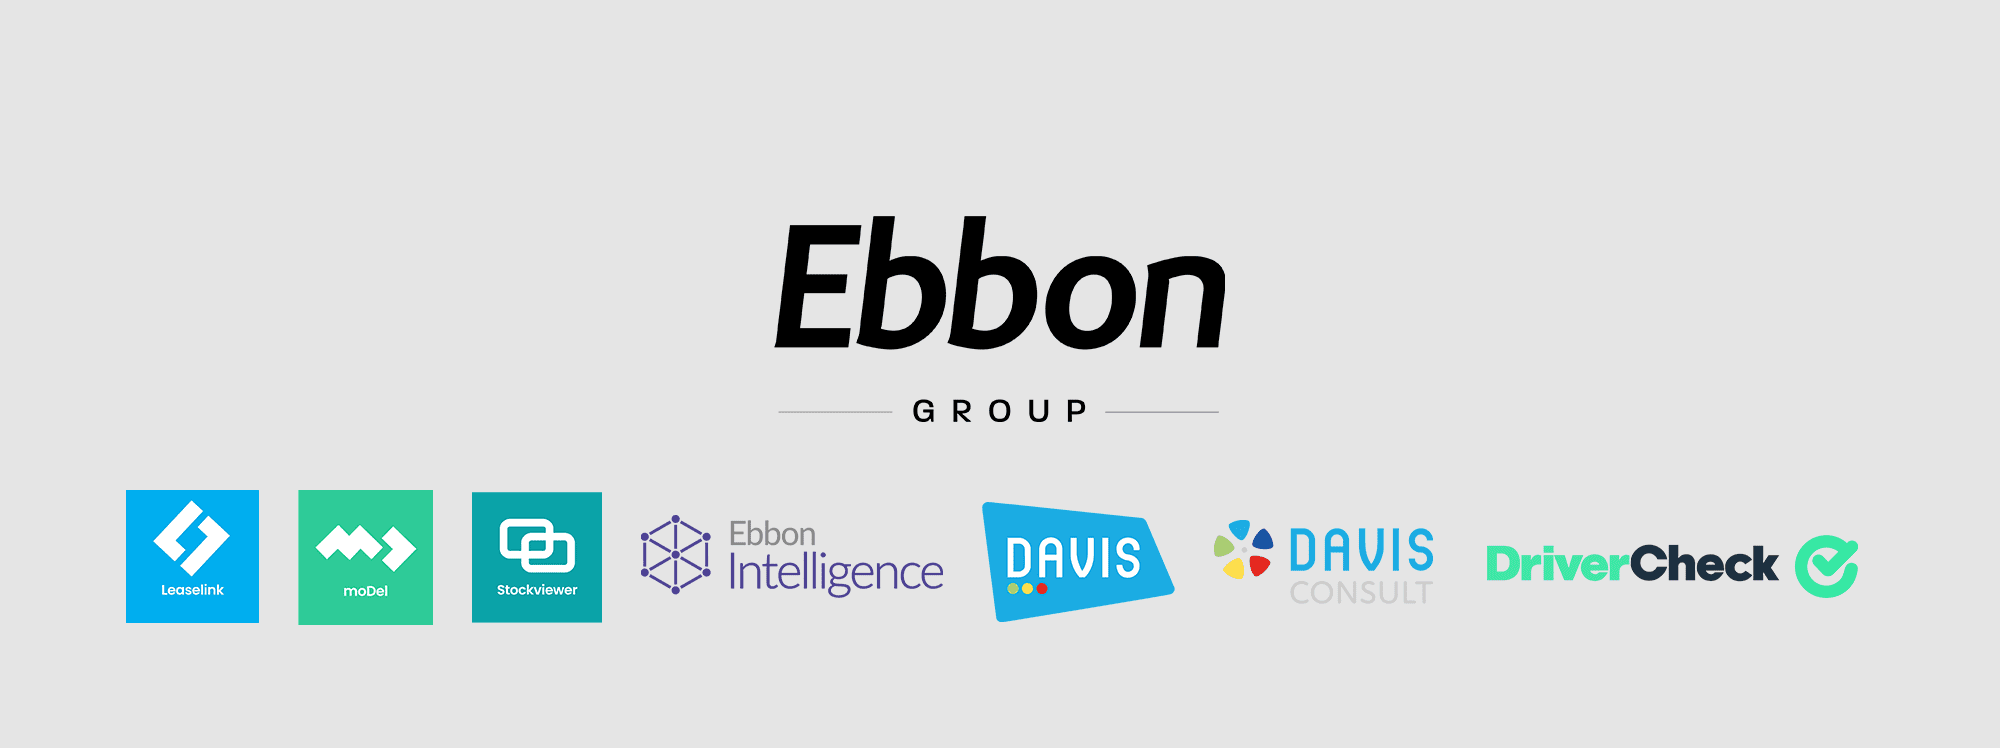 Ebbon Group Bottom Image (updated)